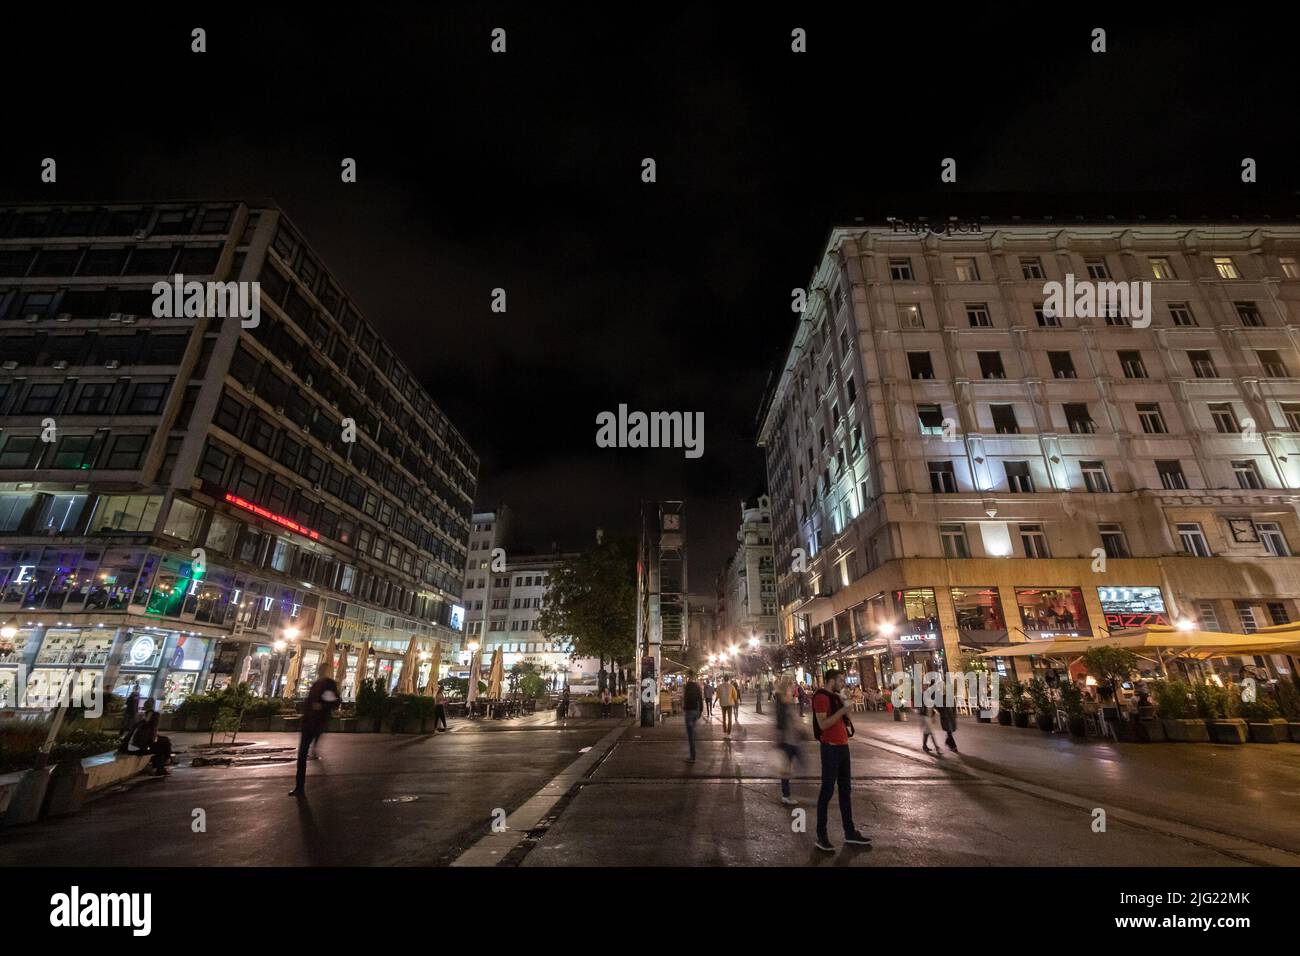 Bild von Trg Republike, auch republikplatz genannt, wo Menschen vorbeikommen und nachts in Belgrad, Serbien, warten. Platz der Republik oder Platz der Th Stockfoto